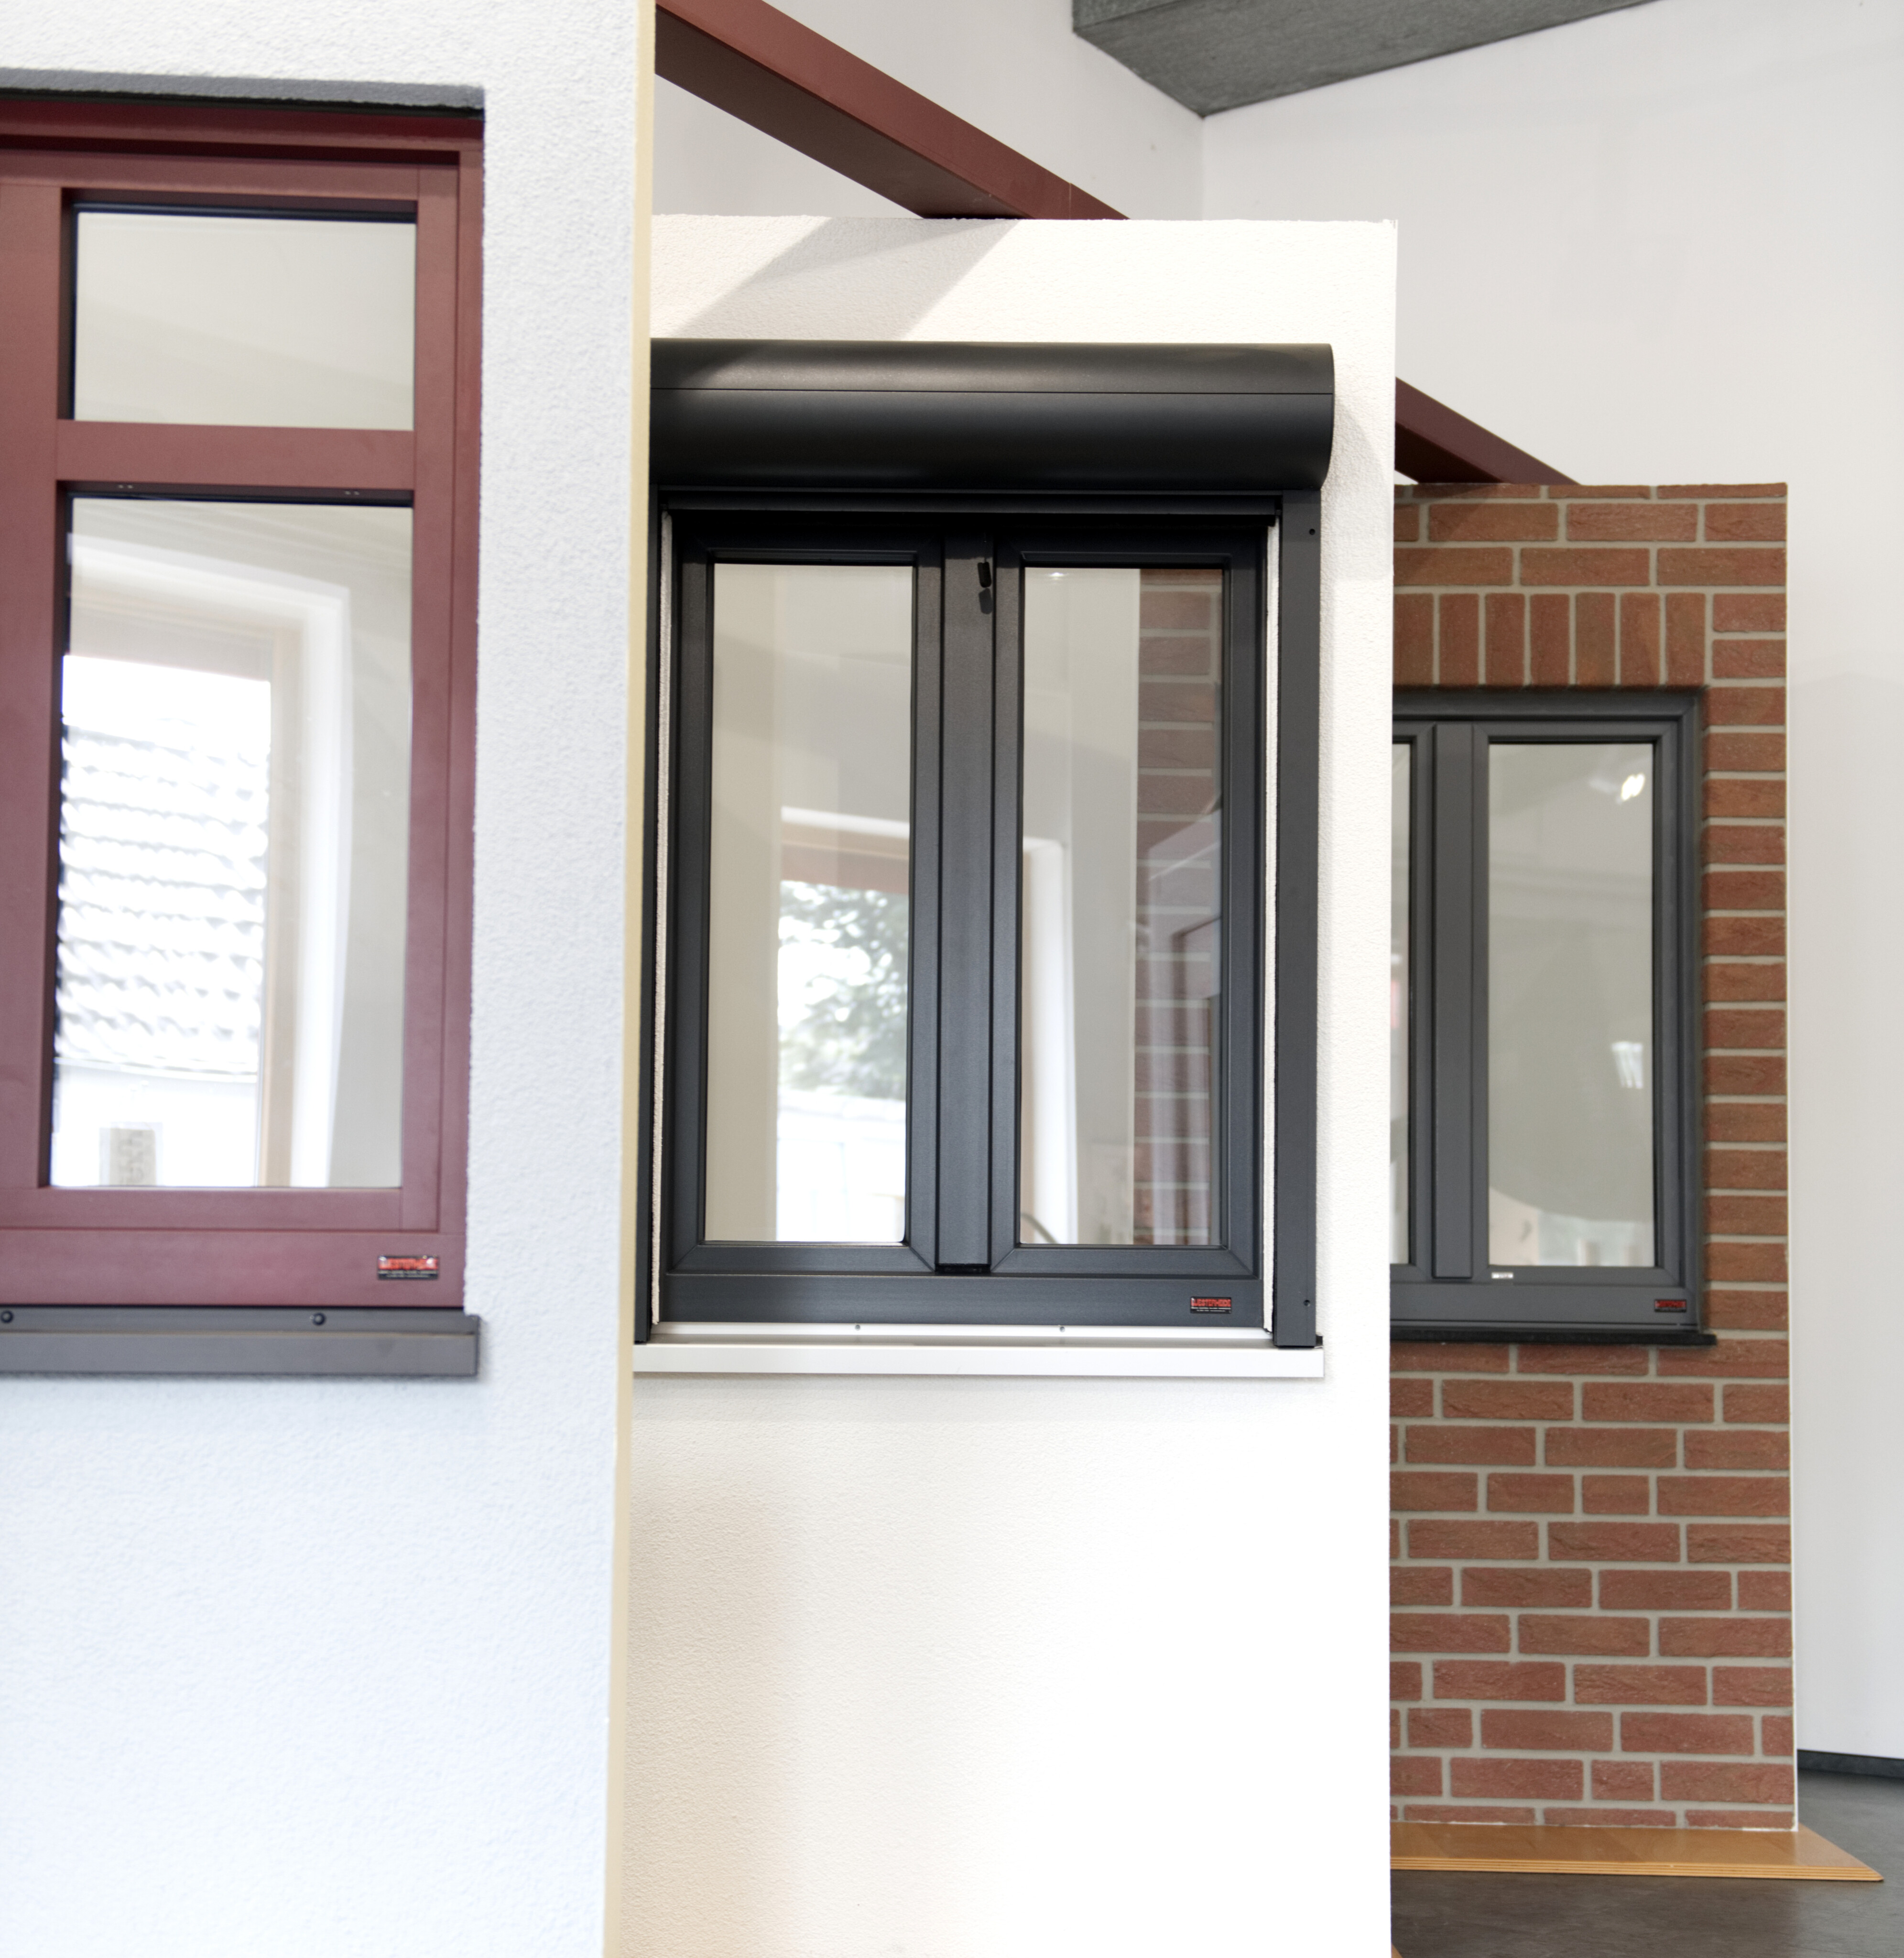 Gruppenbild von drei Fenster-Elementen in verschiedenen Wandtypen. In einem Fenster ist eine Vorbau-Aluminium-Rollade eingebaut mit rundem Kasten in dunkelgrau.